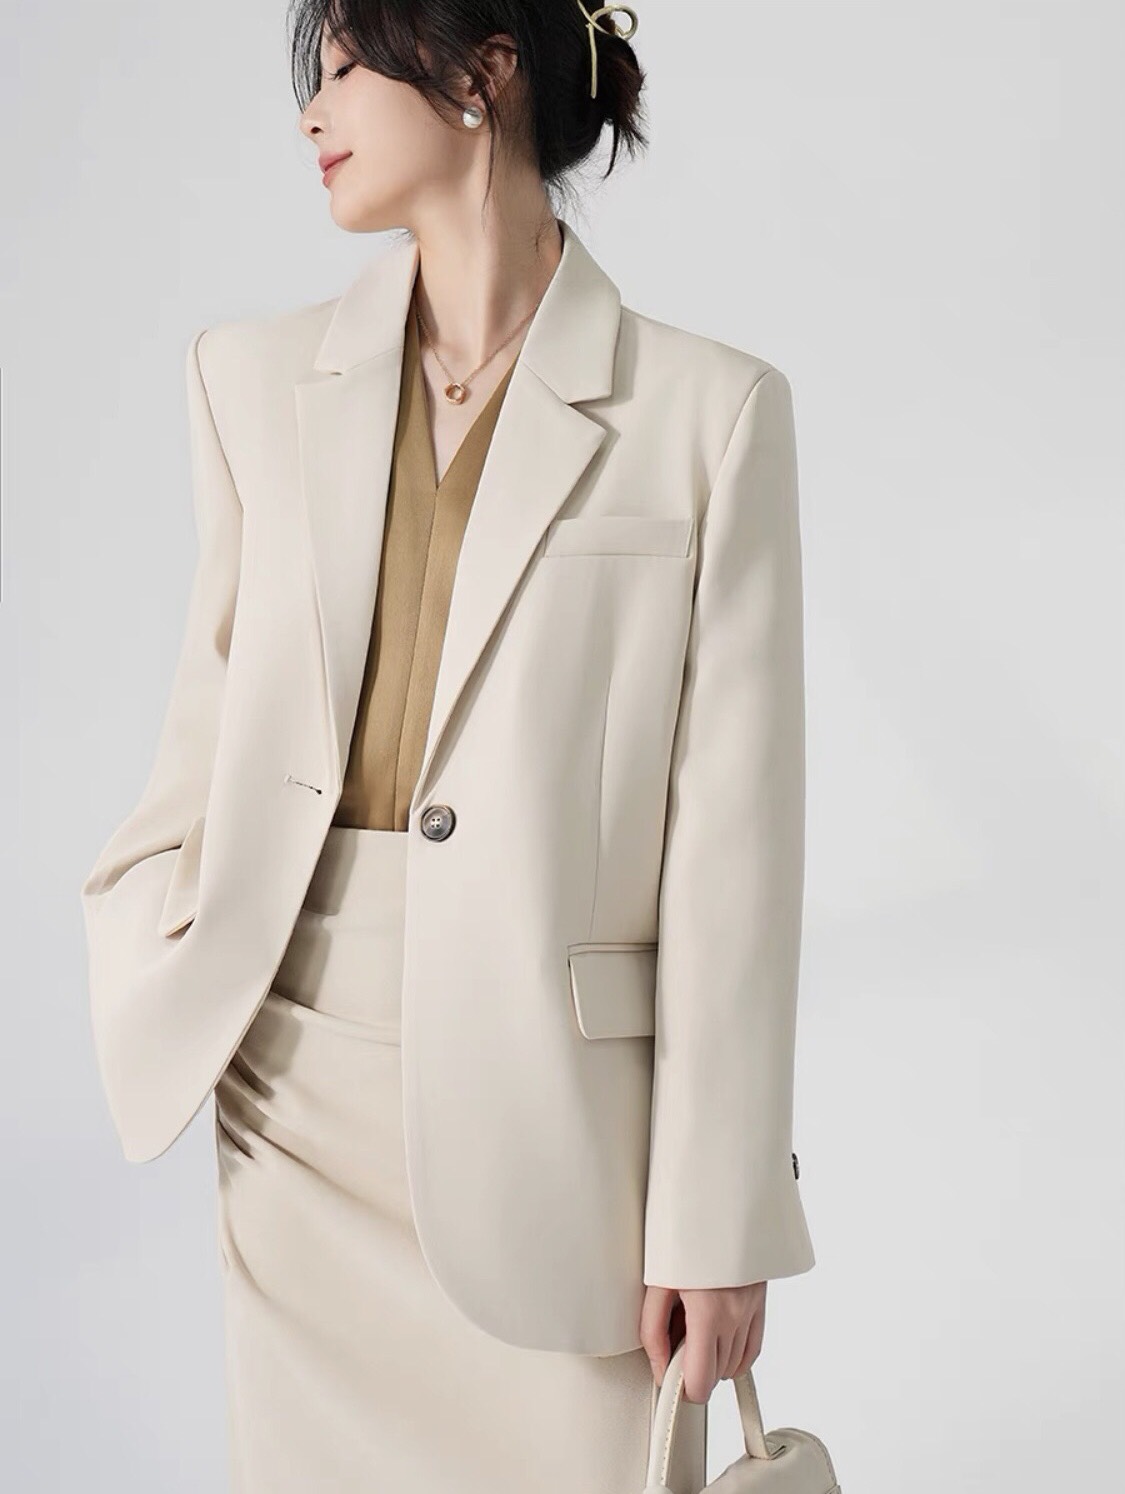 Áo vest công sở nữ chất liệu tuyết mưa cao cấp áo khoác blazer nữ 2 lớp có độn vai 3 màu basic dễ phối đồ mặc đi làm